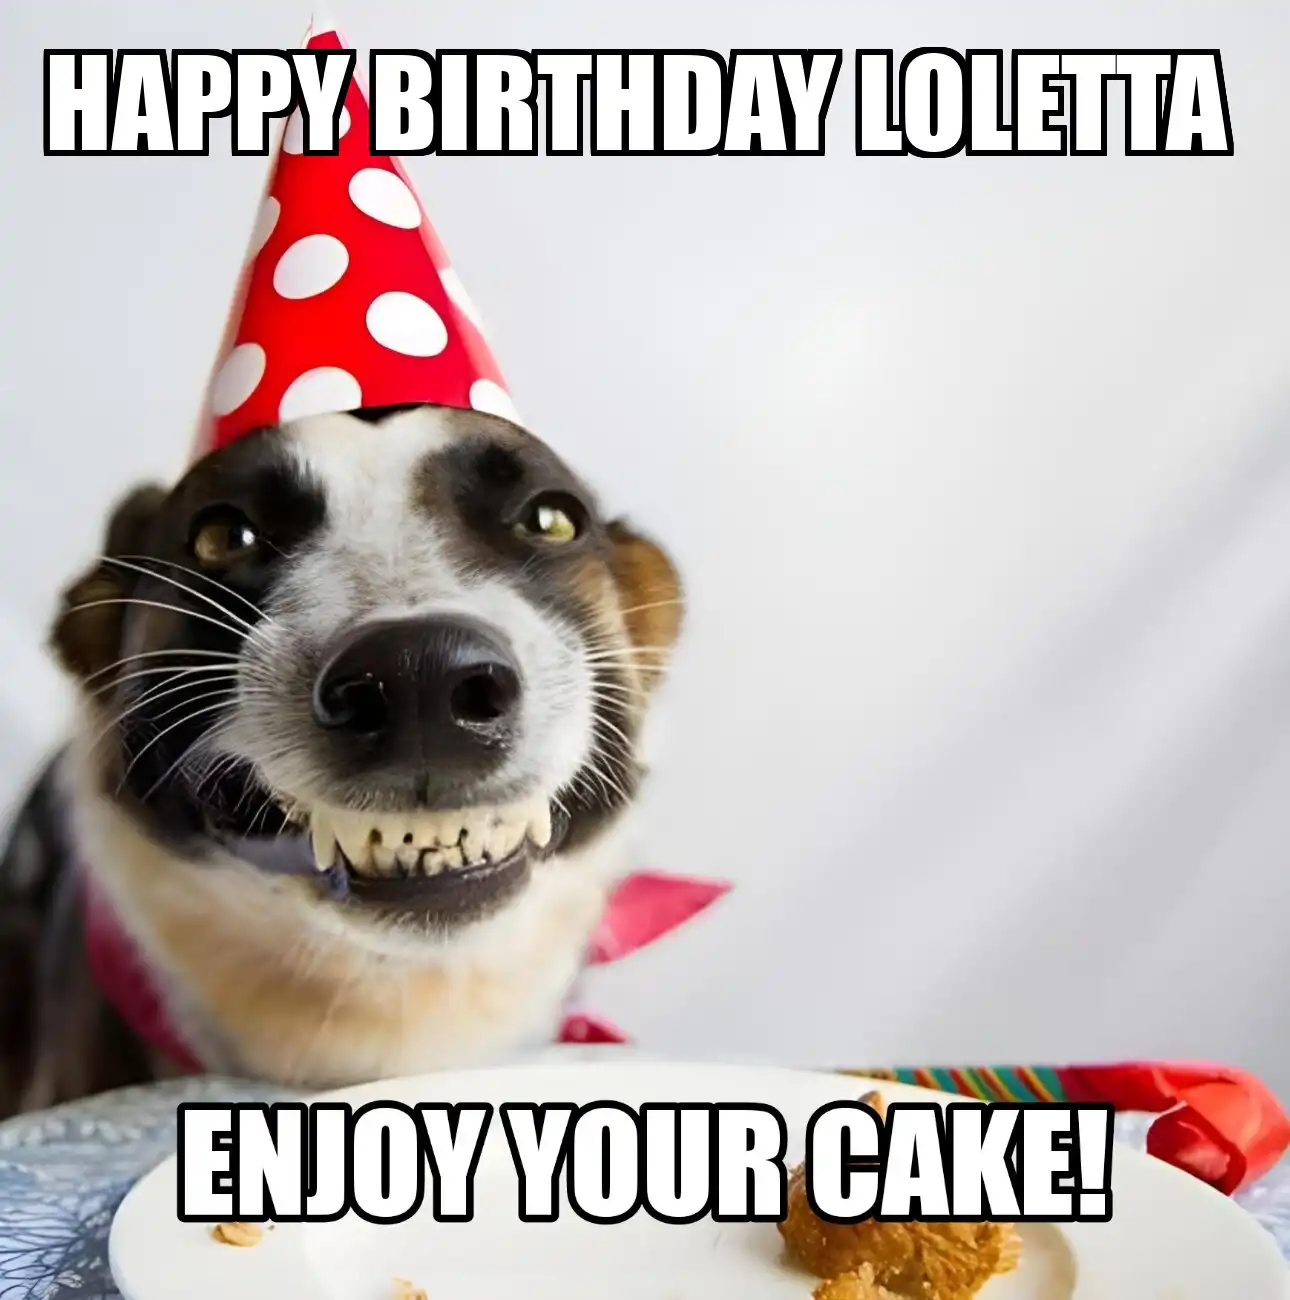 Happy Birthday Loletta Enjoy Your Cake Dog Meme